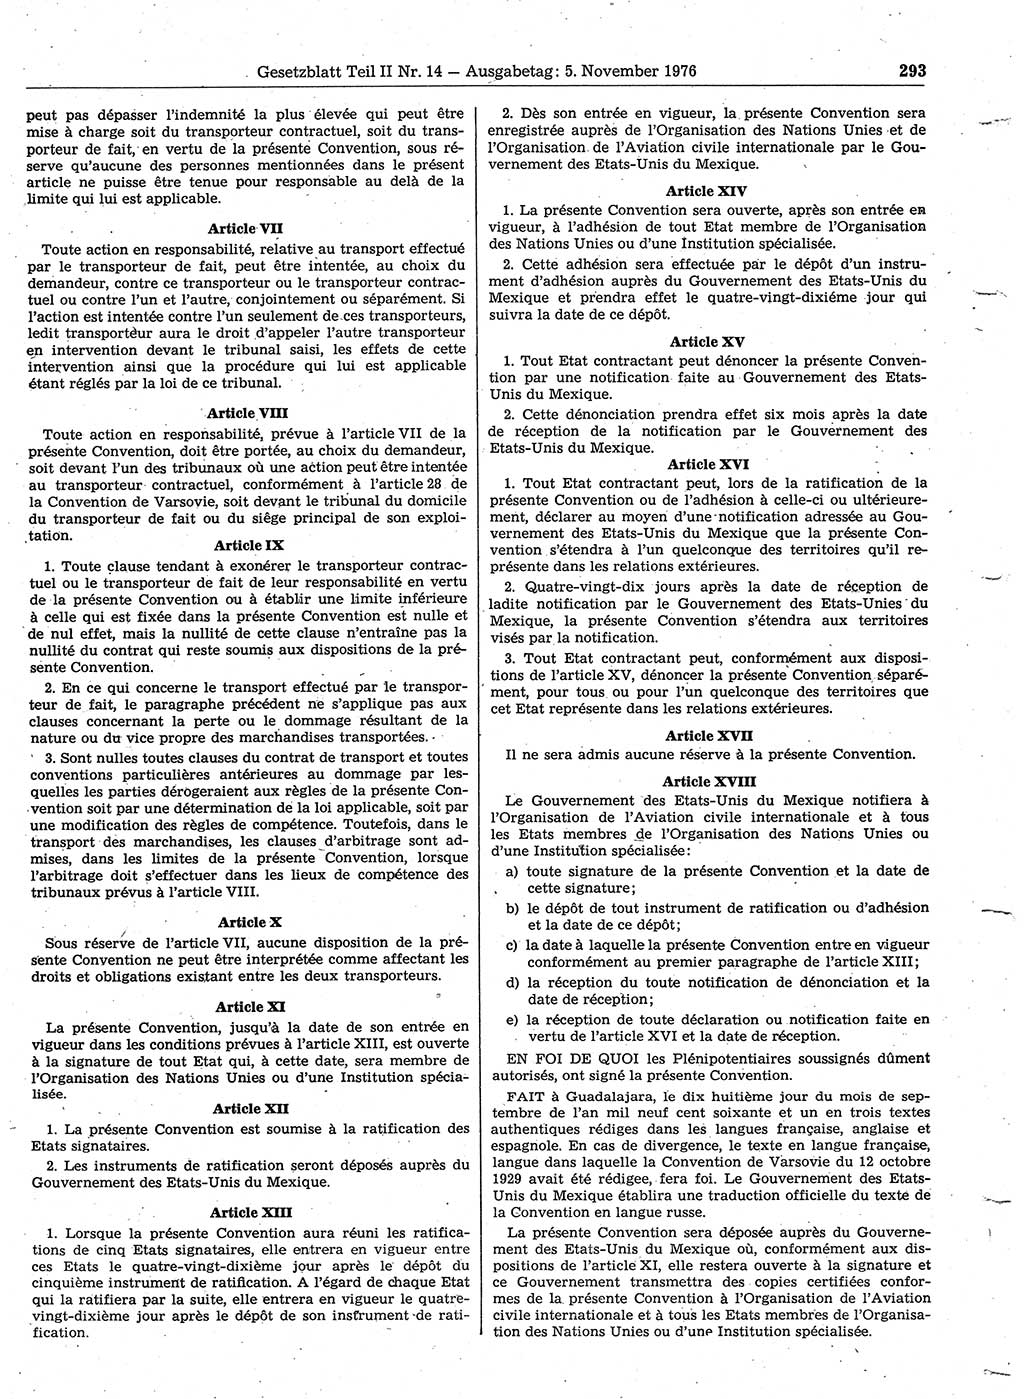 Gesetzblatt (GBl.) der Deutschen Demokratischen Republik (DDR) Teil ⅠⅠ 1976, Seite 293 (GBl. DDR ⅠⅠ 1976, S. 293)